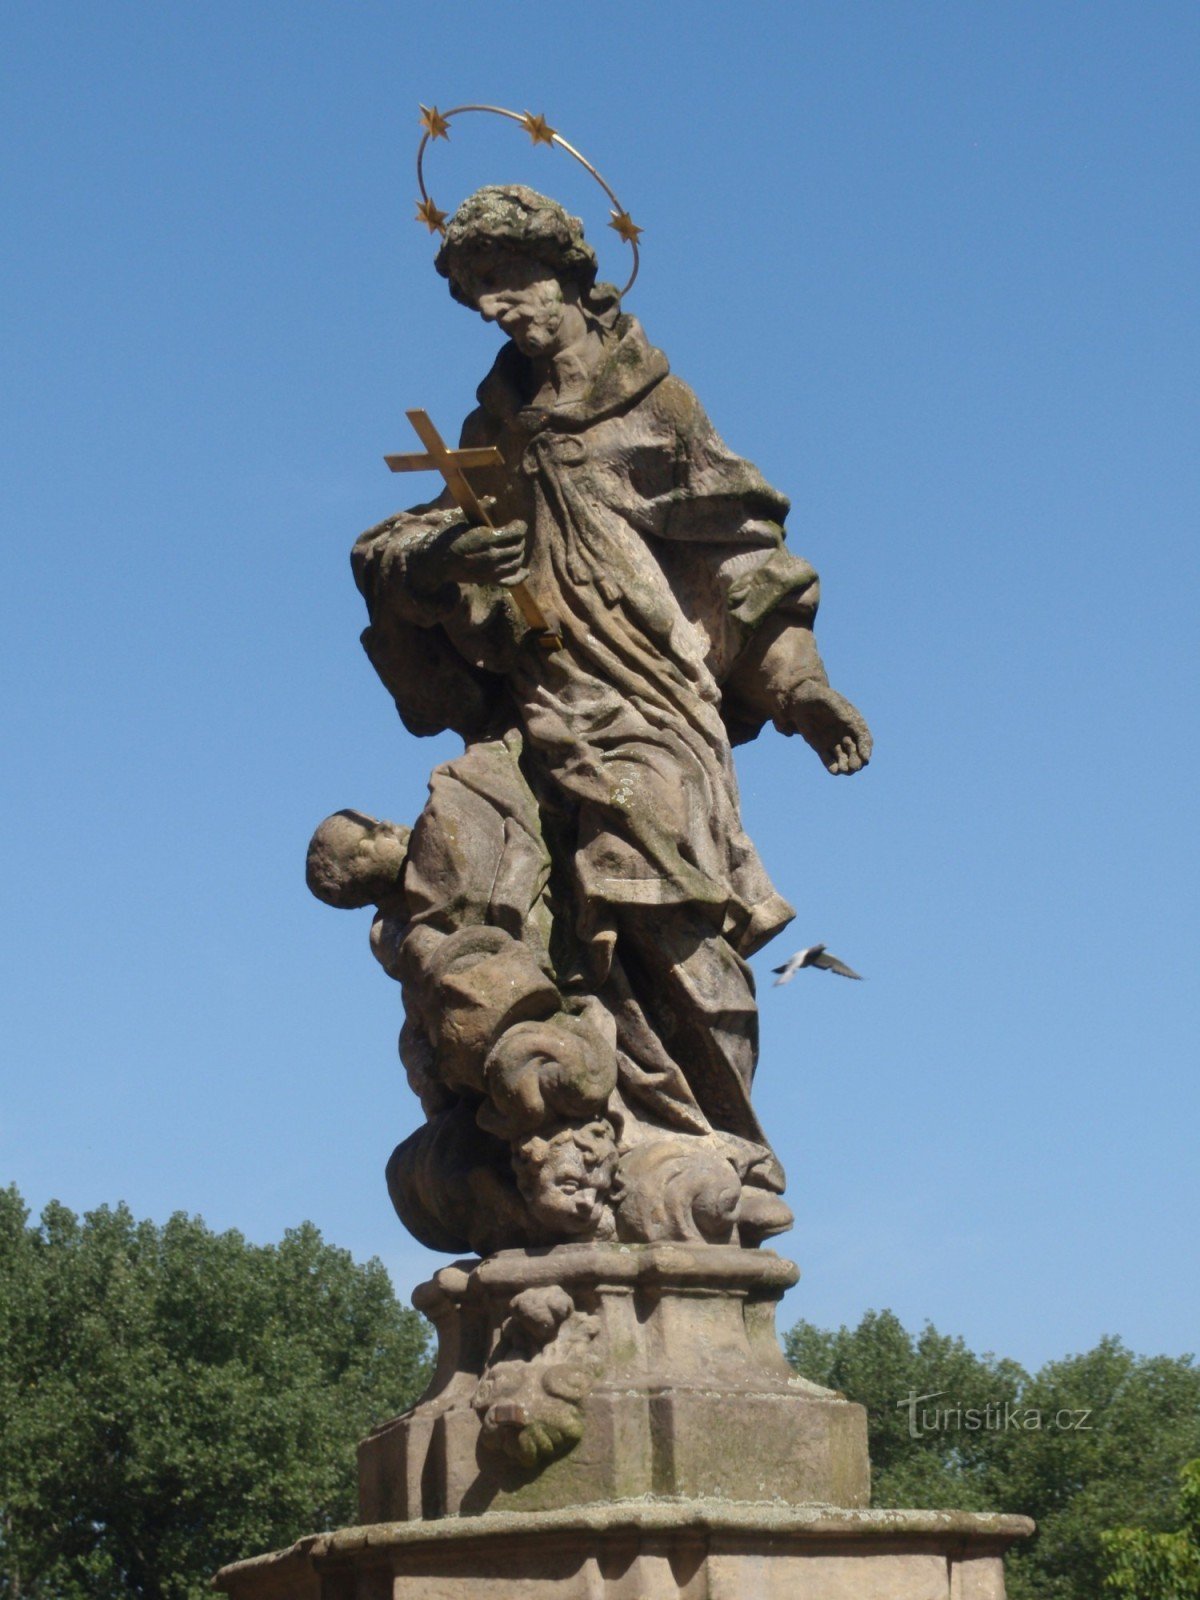 Άγαλμα του Αγ. Ο Jan Nepomucký στο Bakov